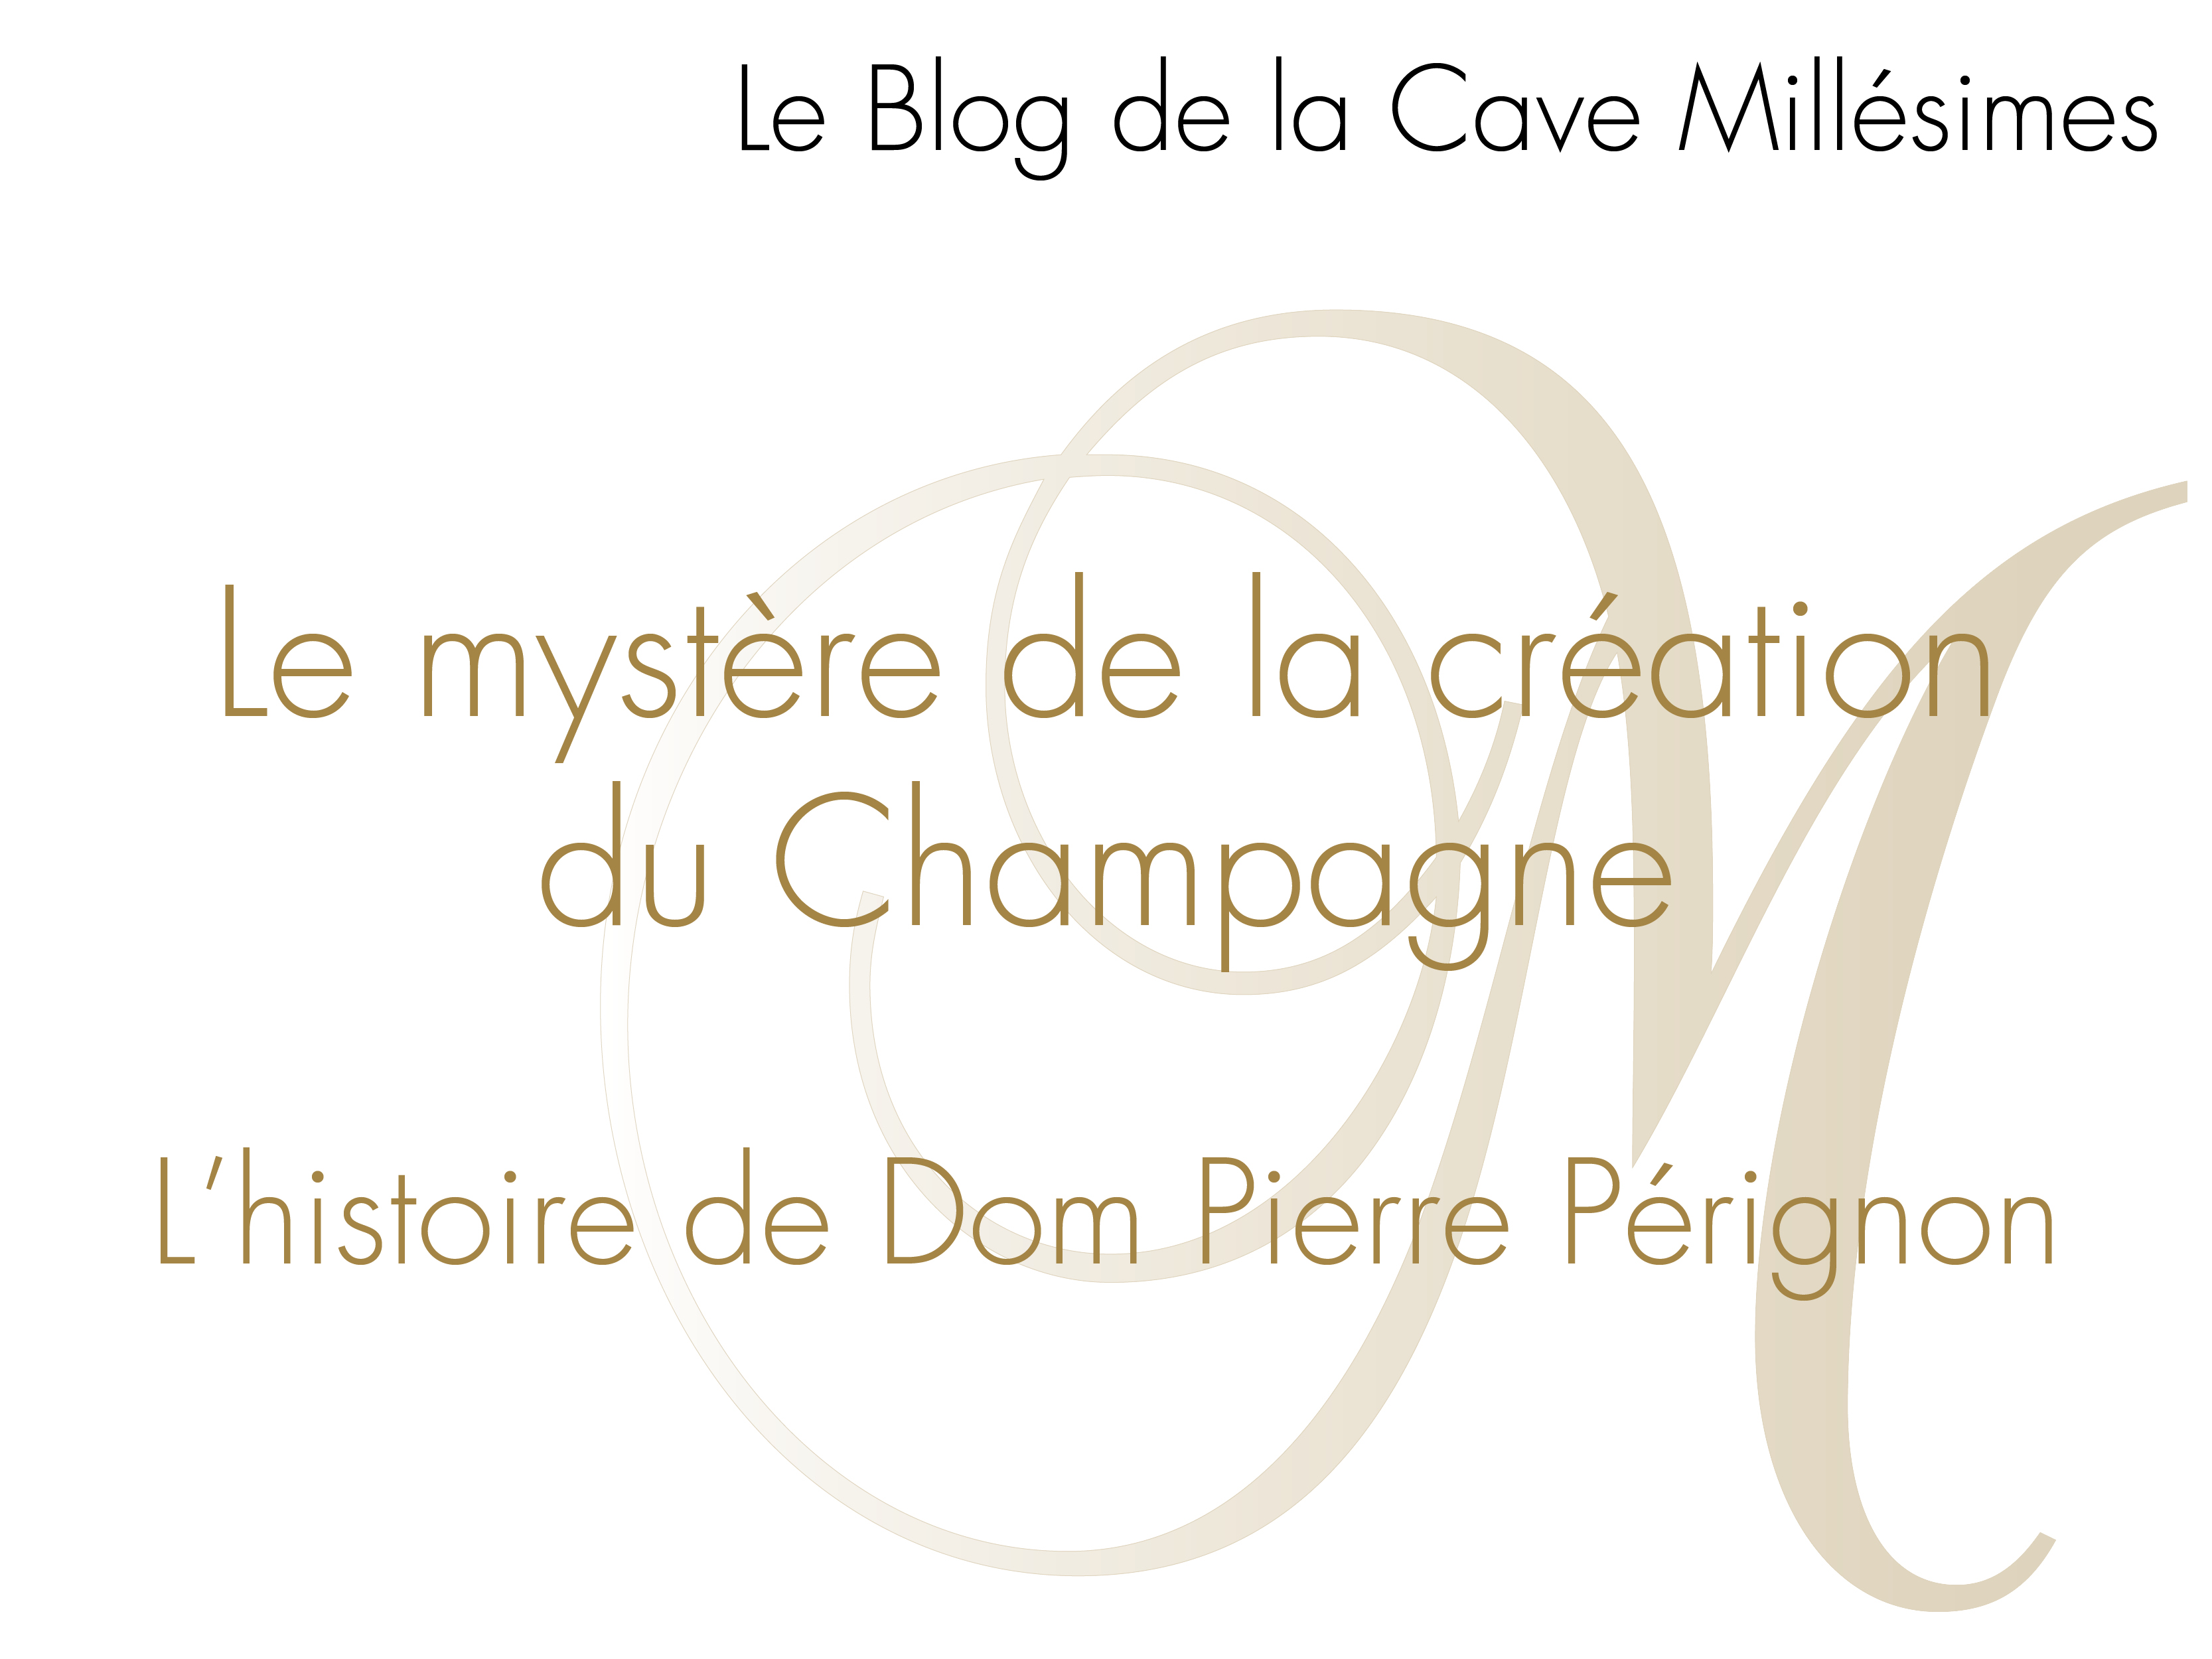 Le mystère de la création du Champagne. L'histoire de Dom Pierre Pérignon